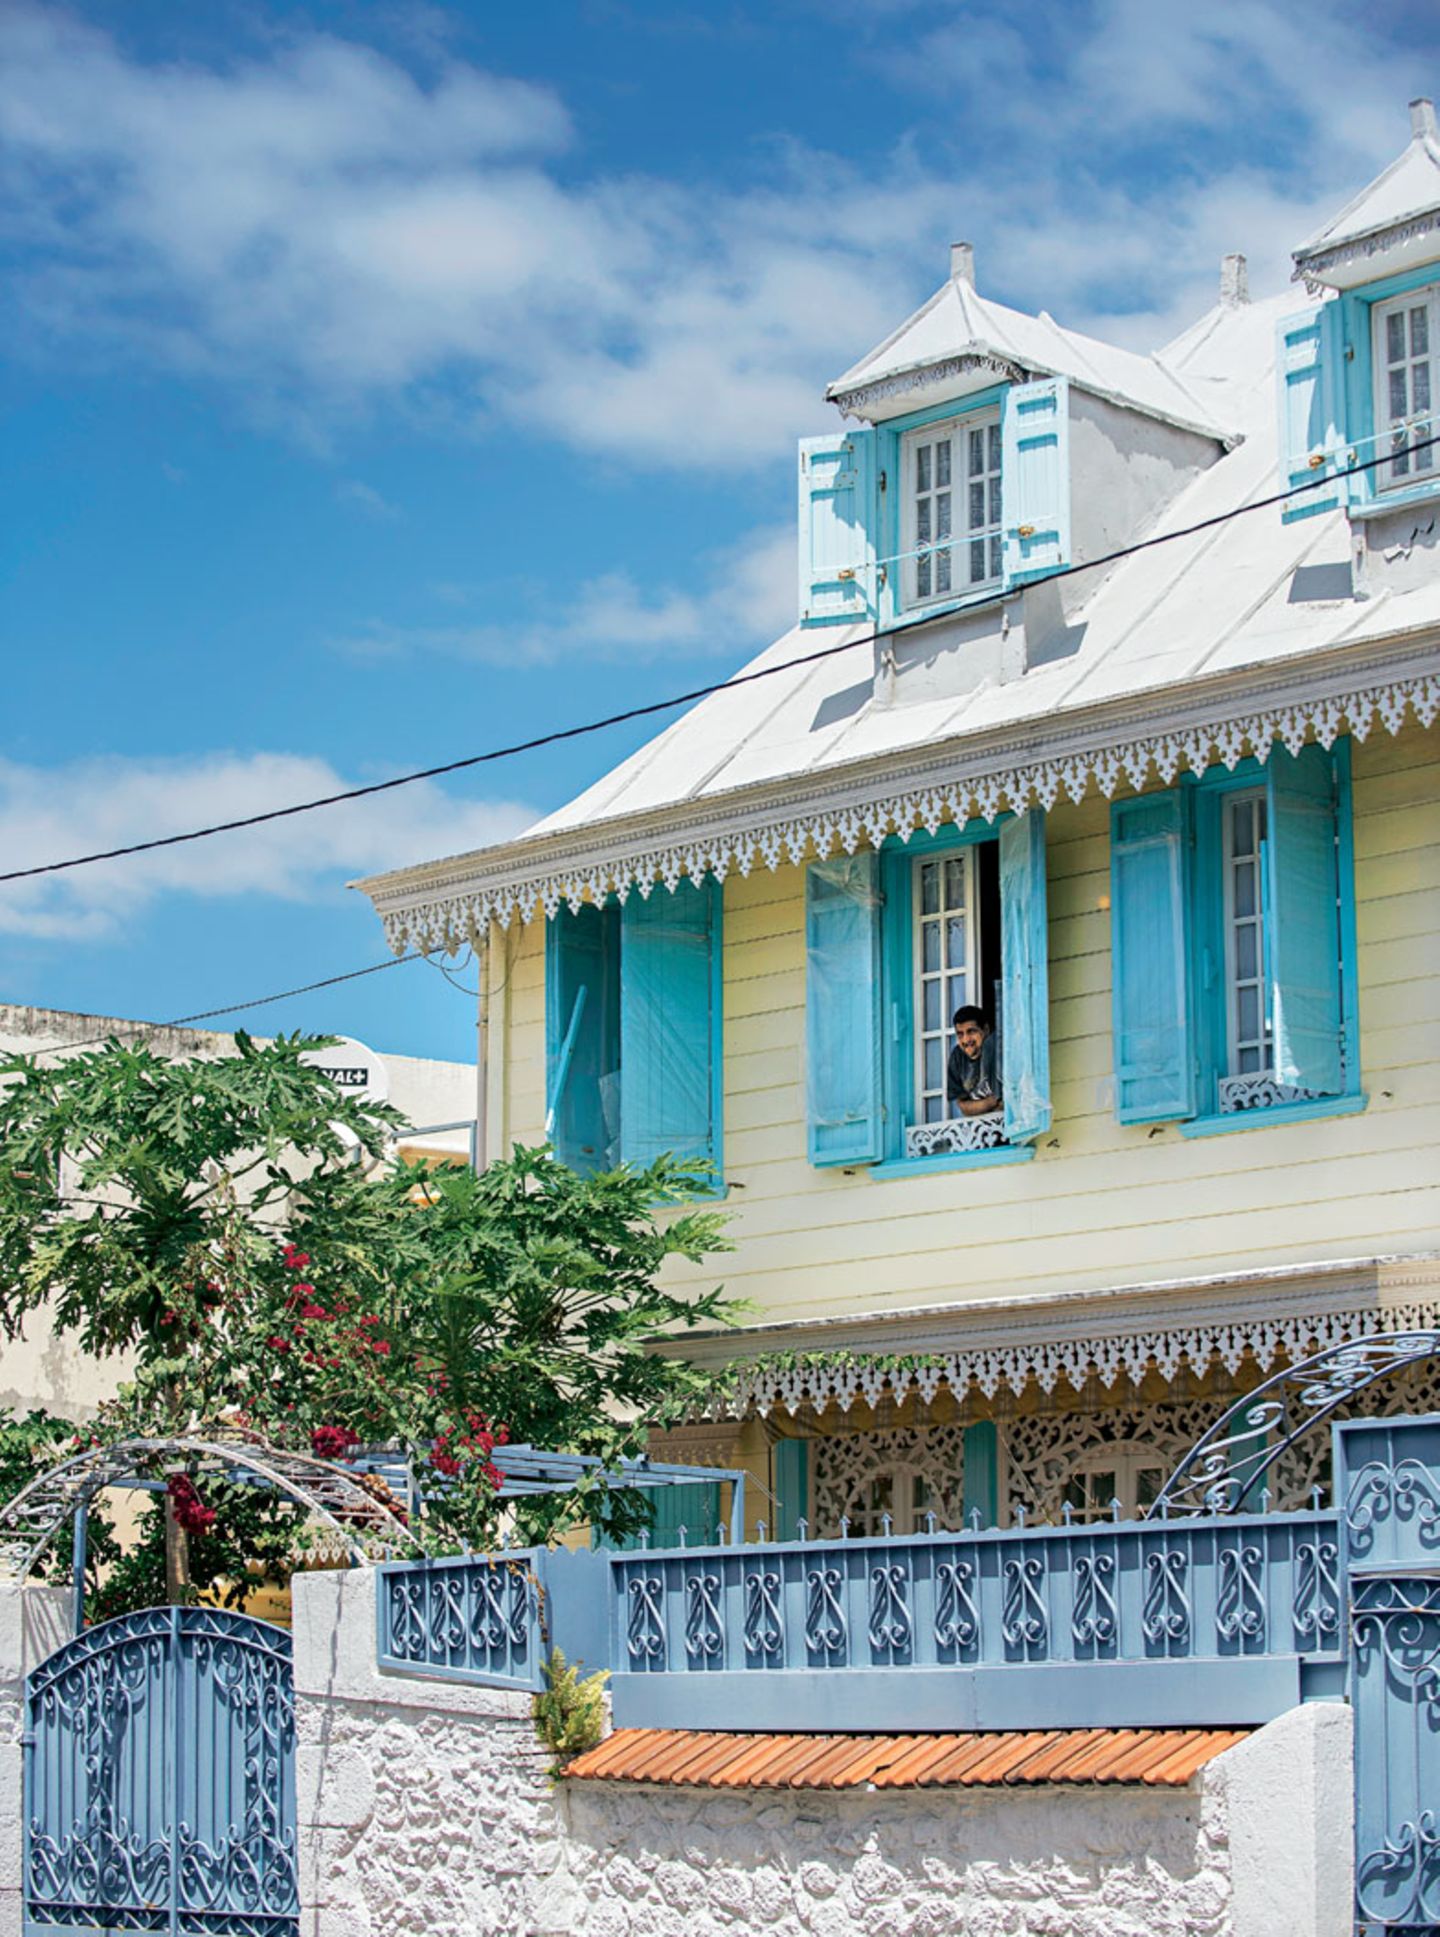 In solch prachtvollen Häusern lebten früher Réunions Zuckerbarone